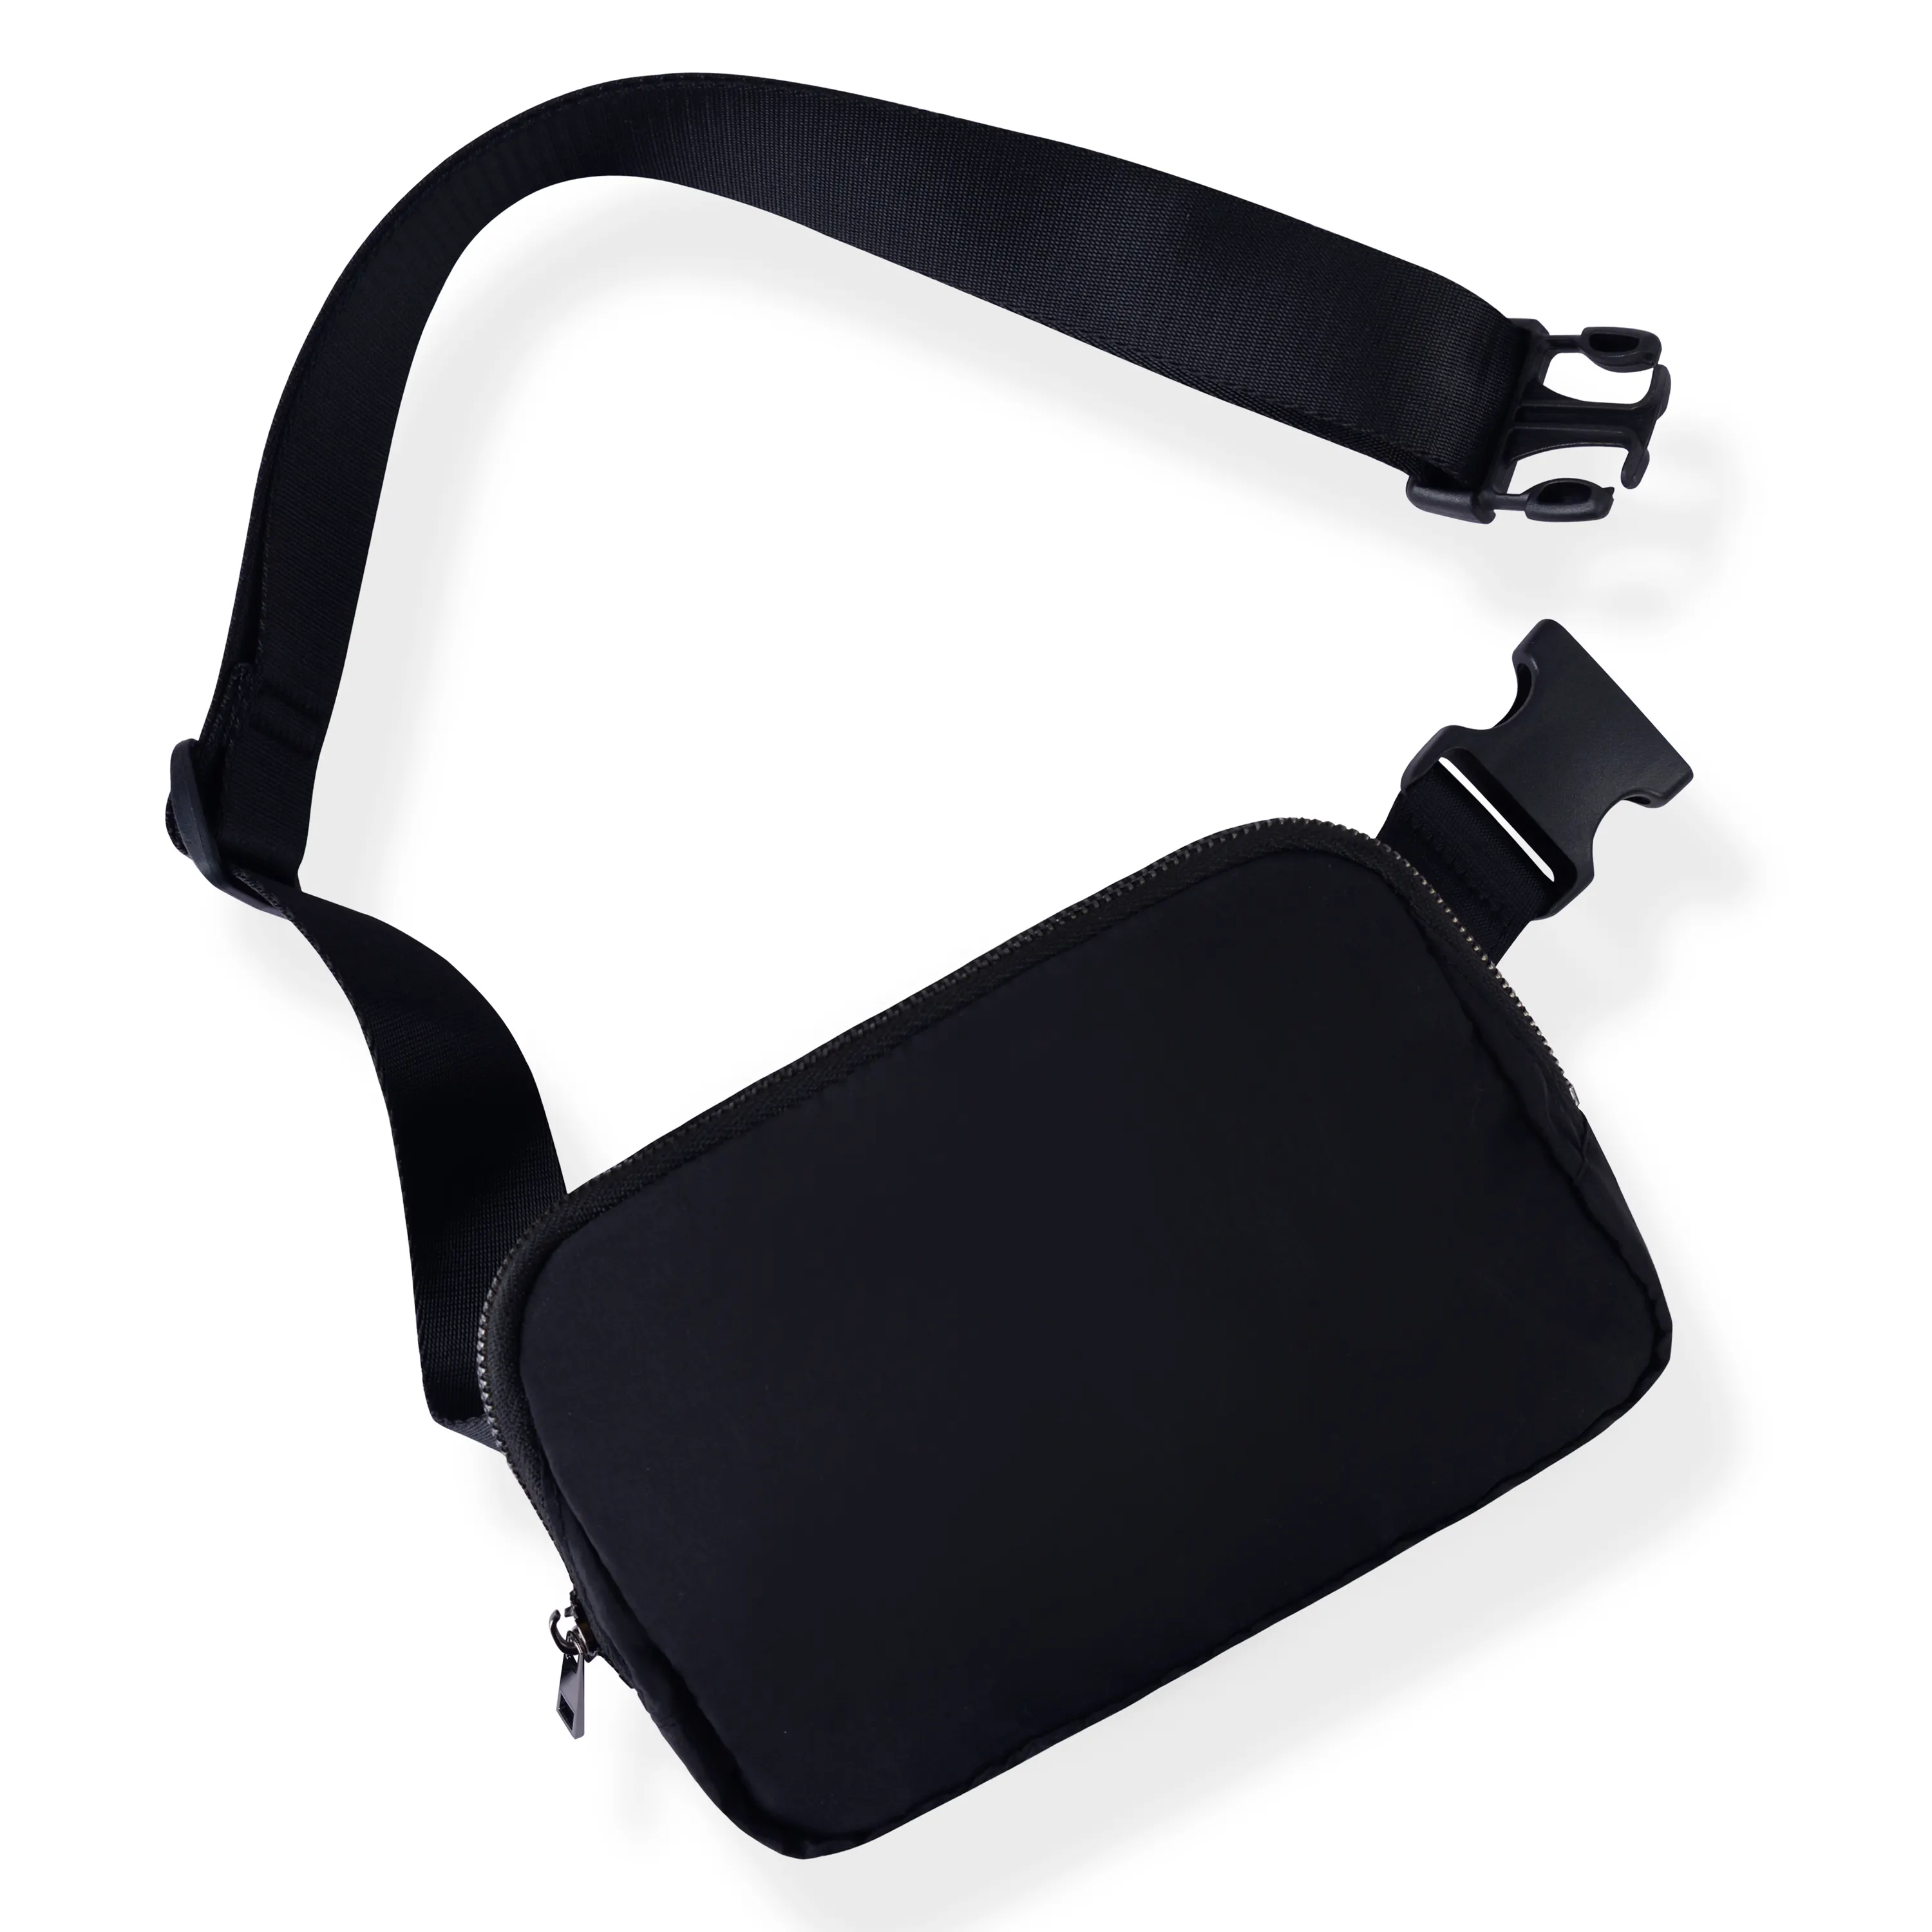 Mini sac de ceinture avec sangle réglable, petite pochette de taille pour l'entraînement, la course, les voyages, la randonnée